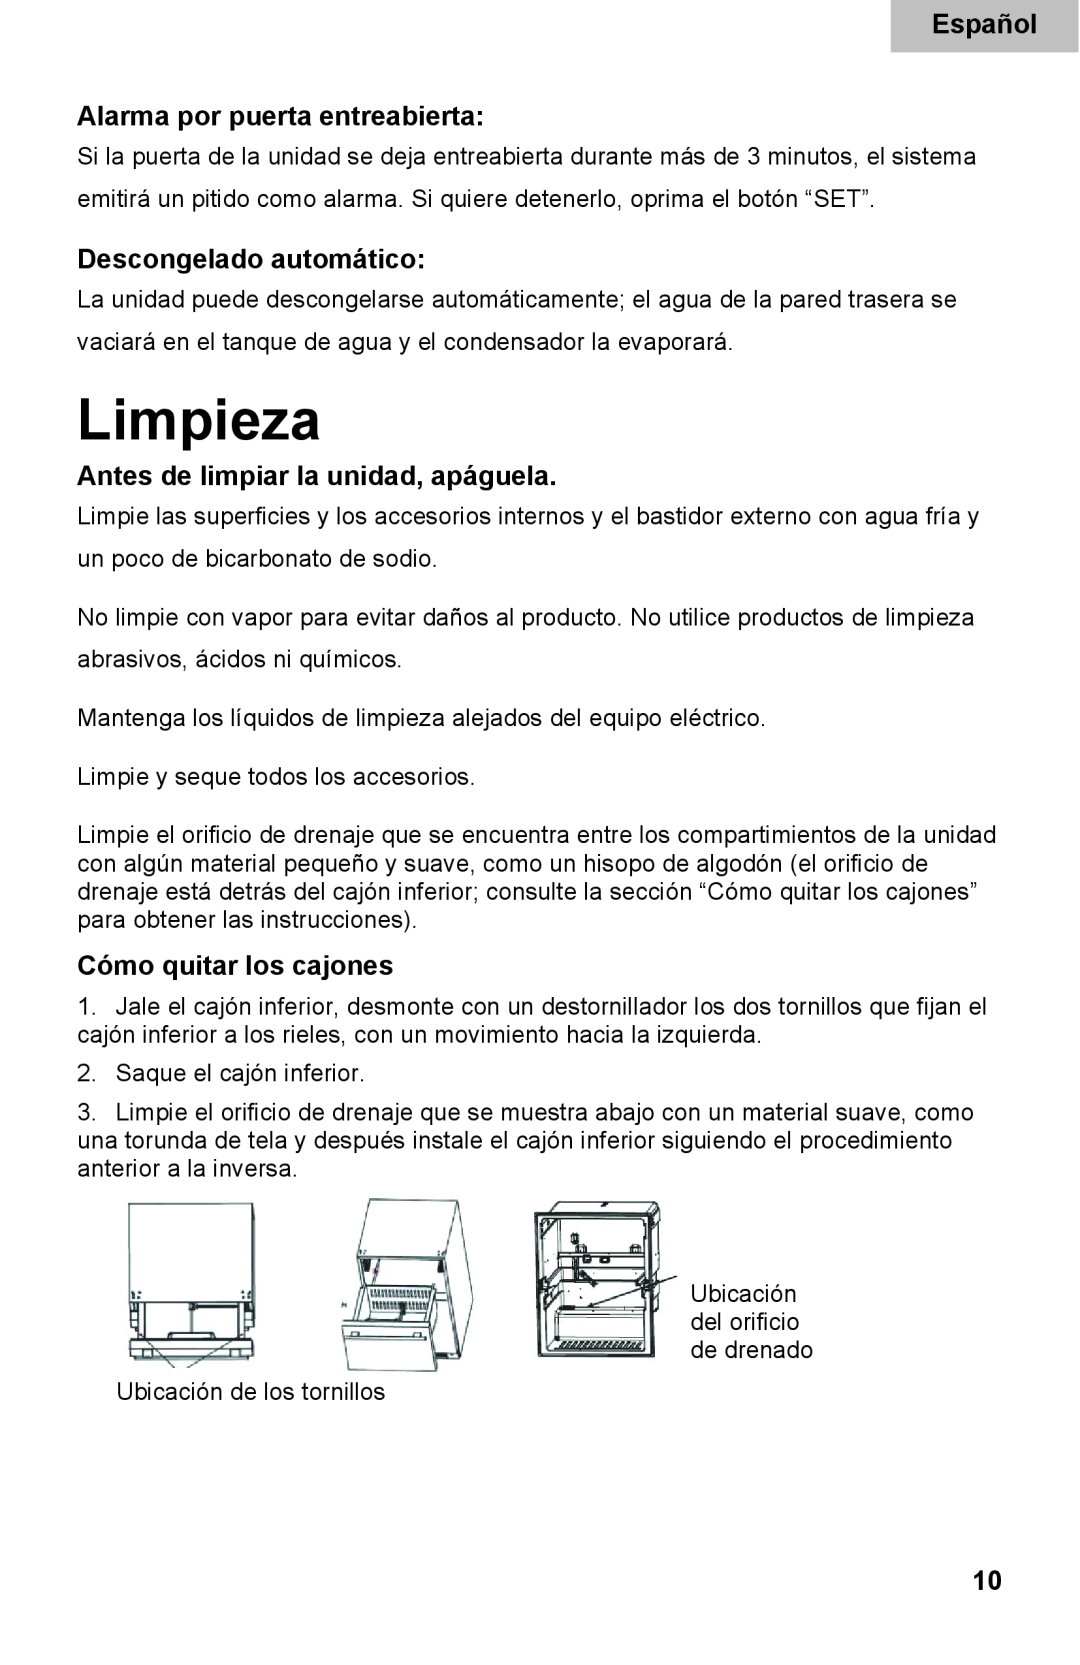 Haier DD400RS manual Limpieza, Español Alarma por puerta entreabierta, Descongelado automático, Cómo quitar los cajones 